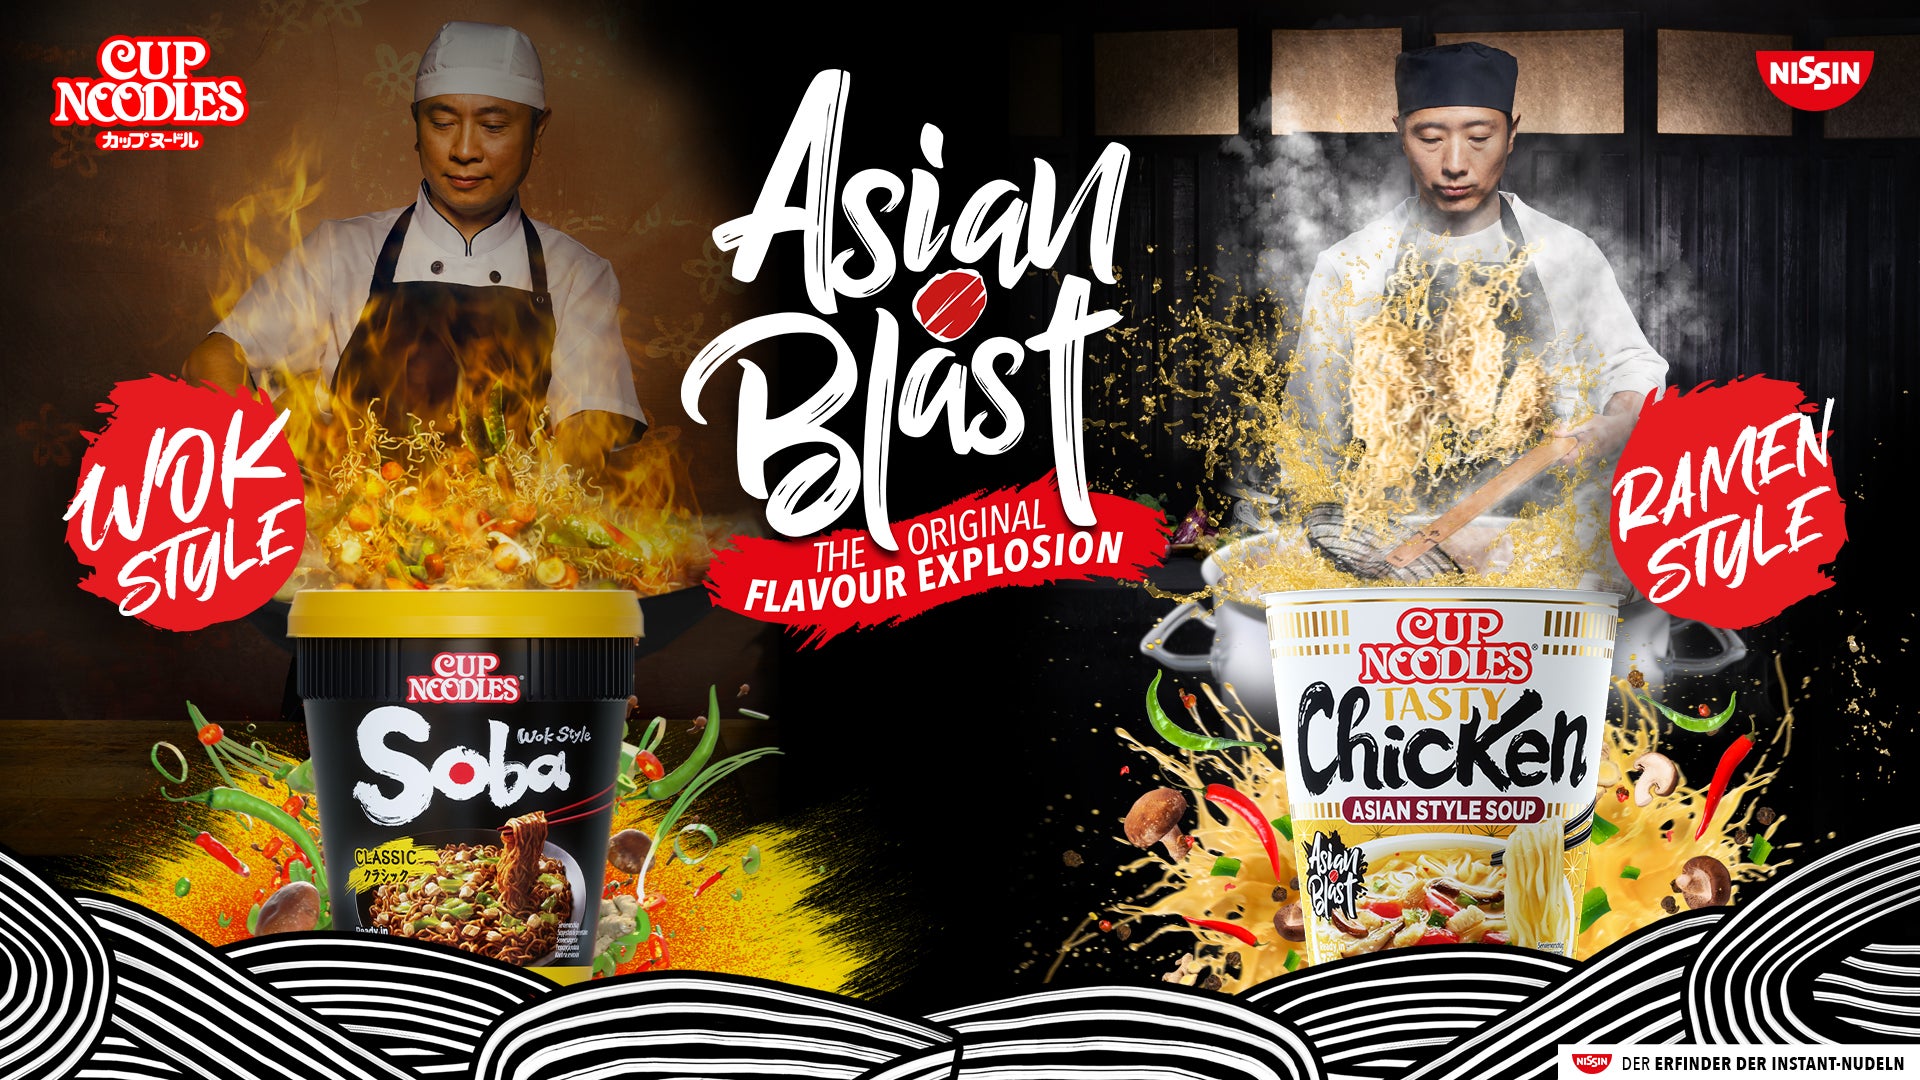 Bilder zu Nissin Cup Noodles Asian Blast - Die Nudeln, wenn das Mana mal alle ist!